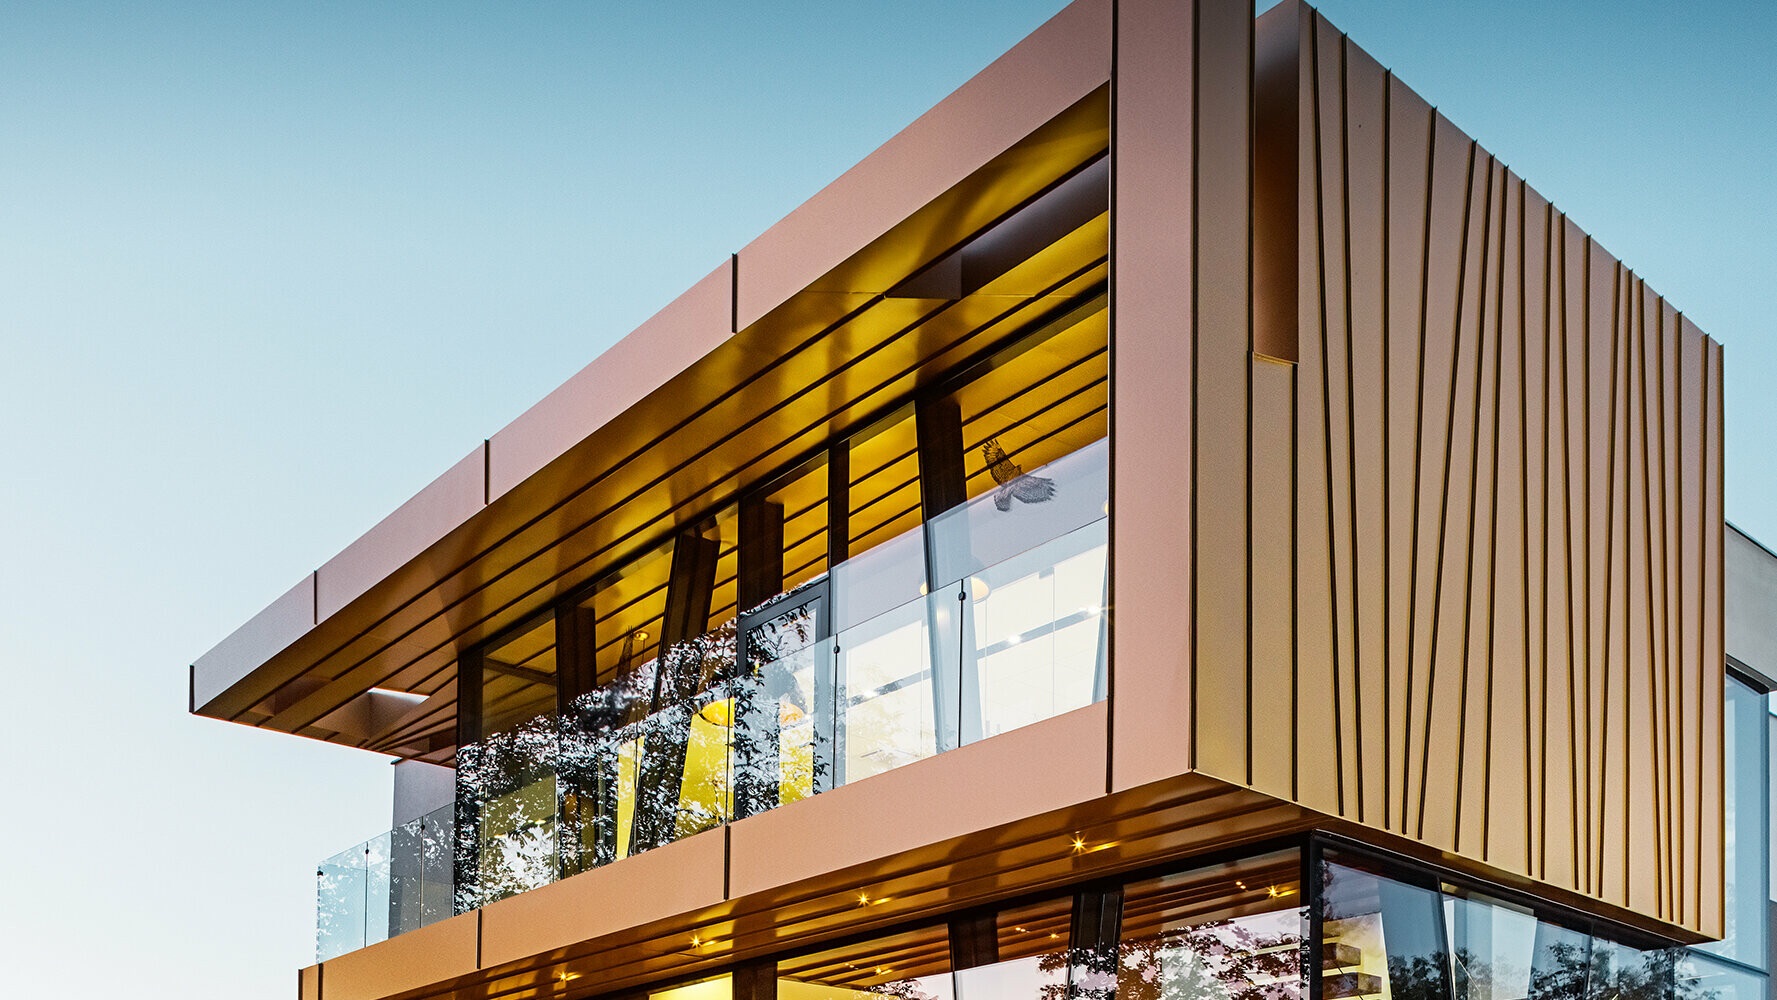 Vinska klet: neenakomerni pregibi aluminijaste fasade v majevsko zlati barvi dajejo zgradbi prav poseben videz.